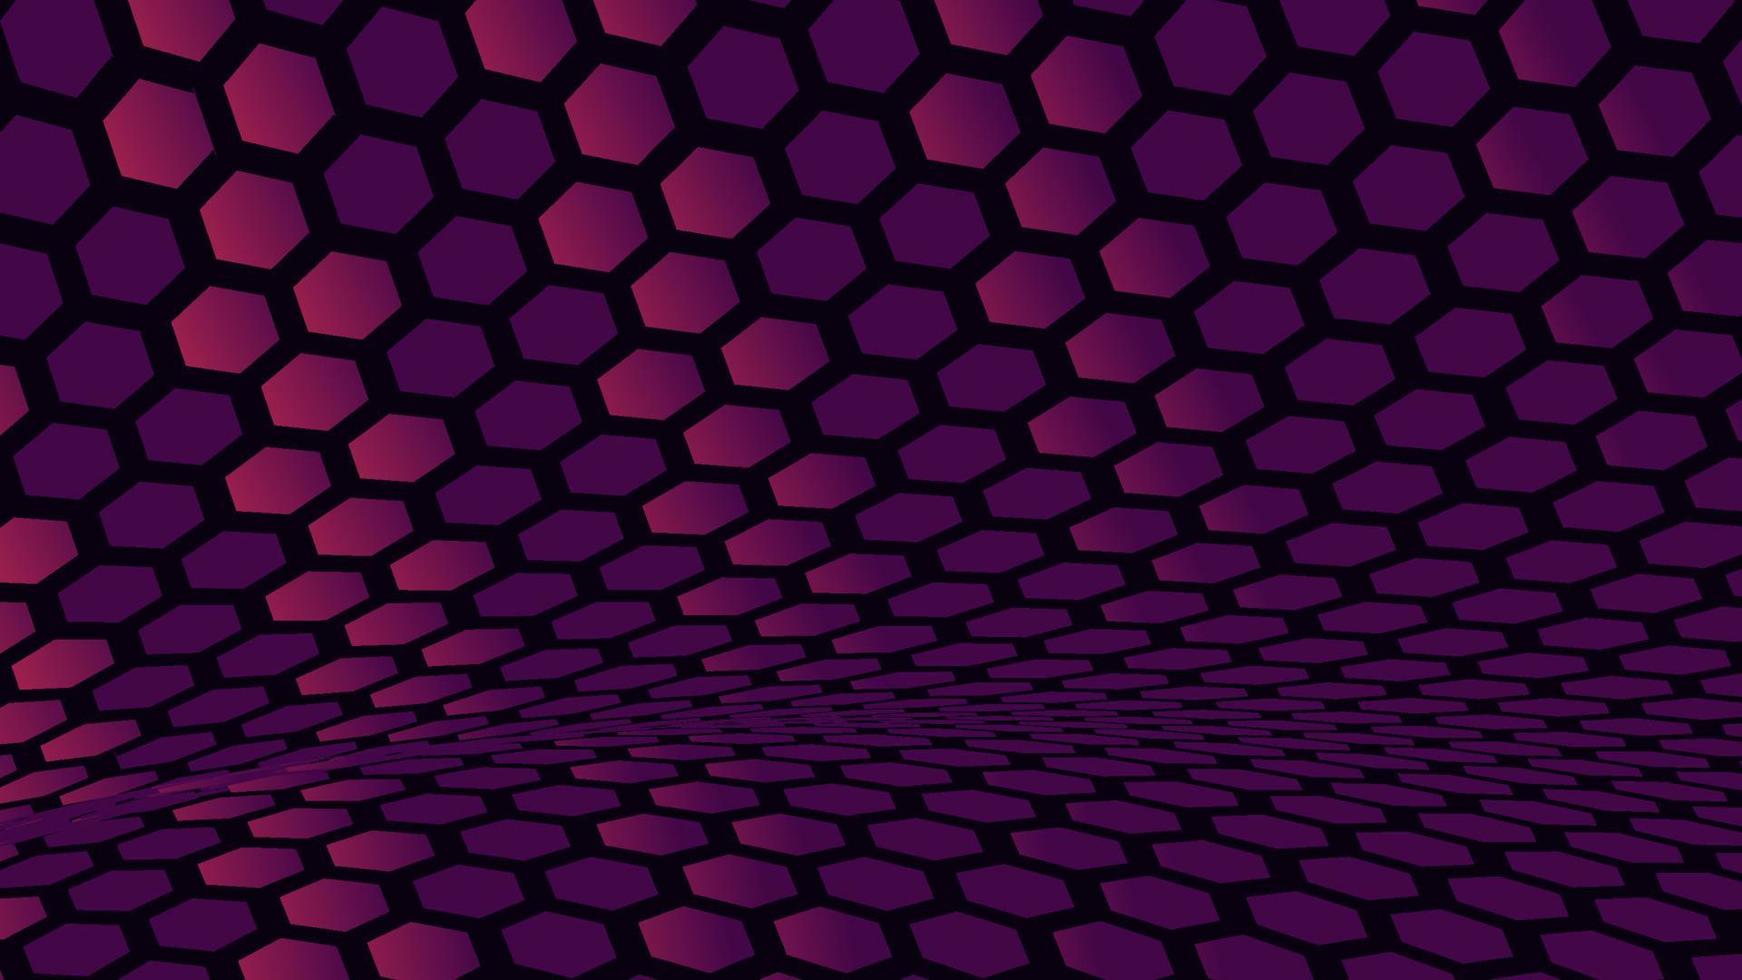 Abstract wavy gradient hexagonal vector background